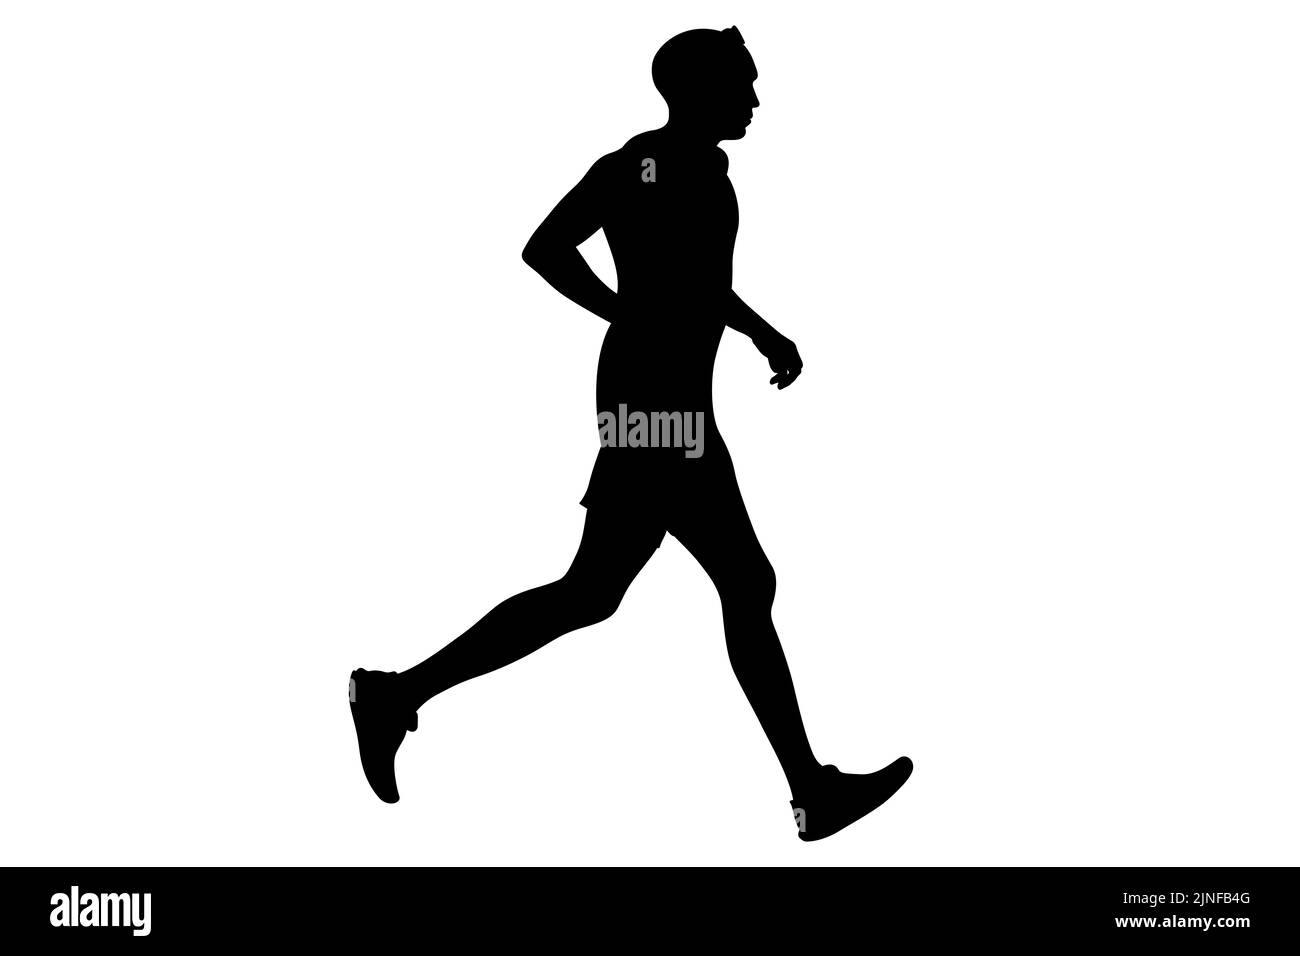 runner athlete running black silhouette Stock Photo